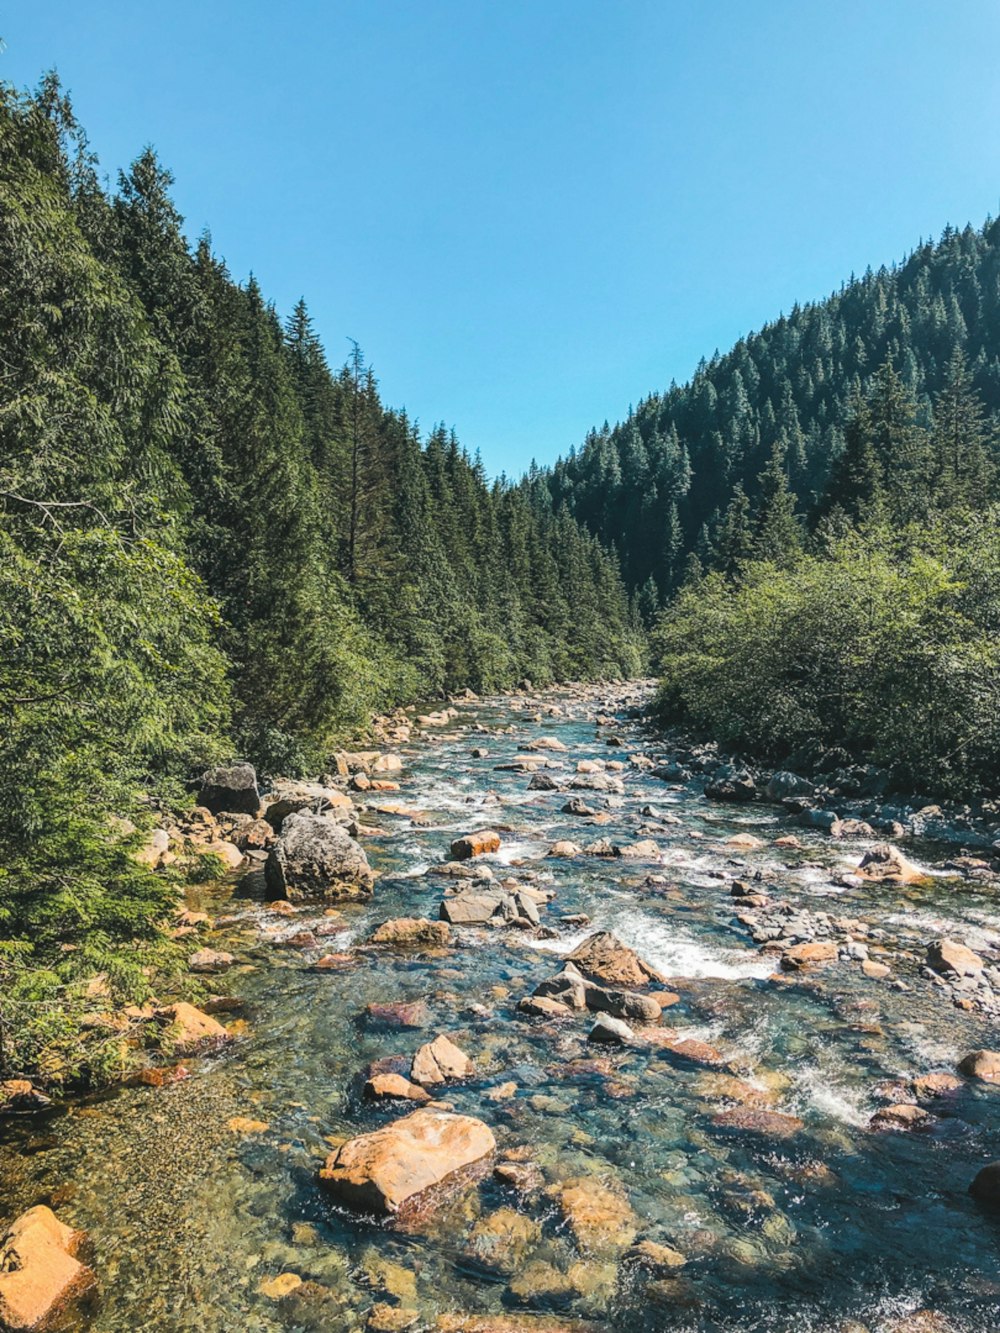 rivière entre les arbres verts sous le ciel bleu pendant la journée